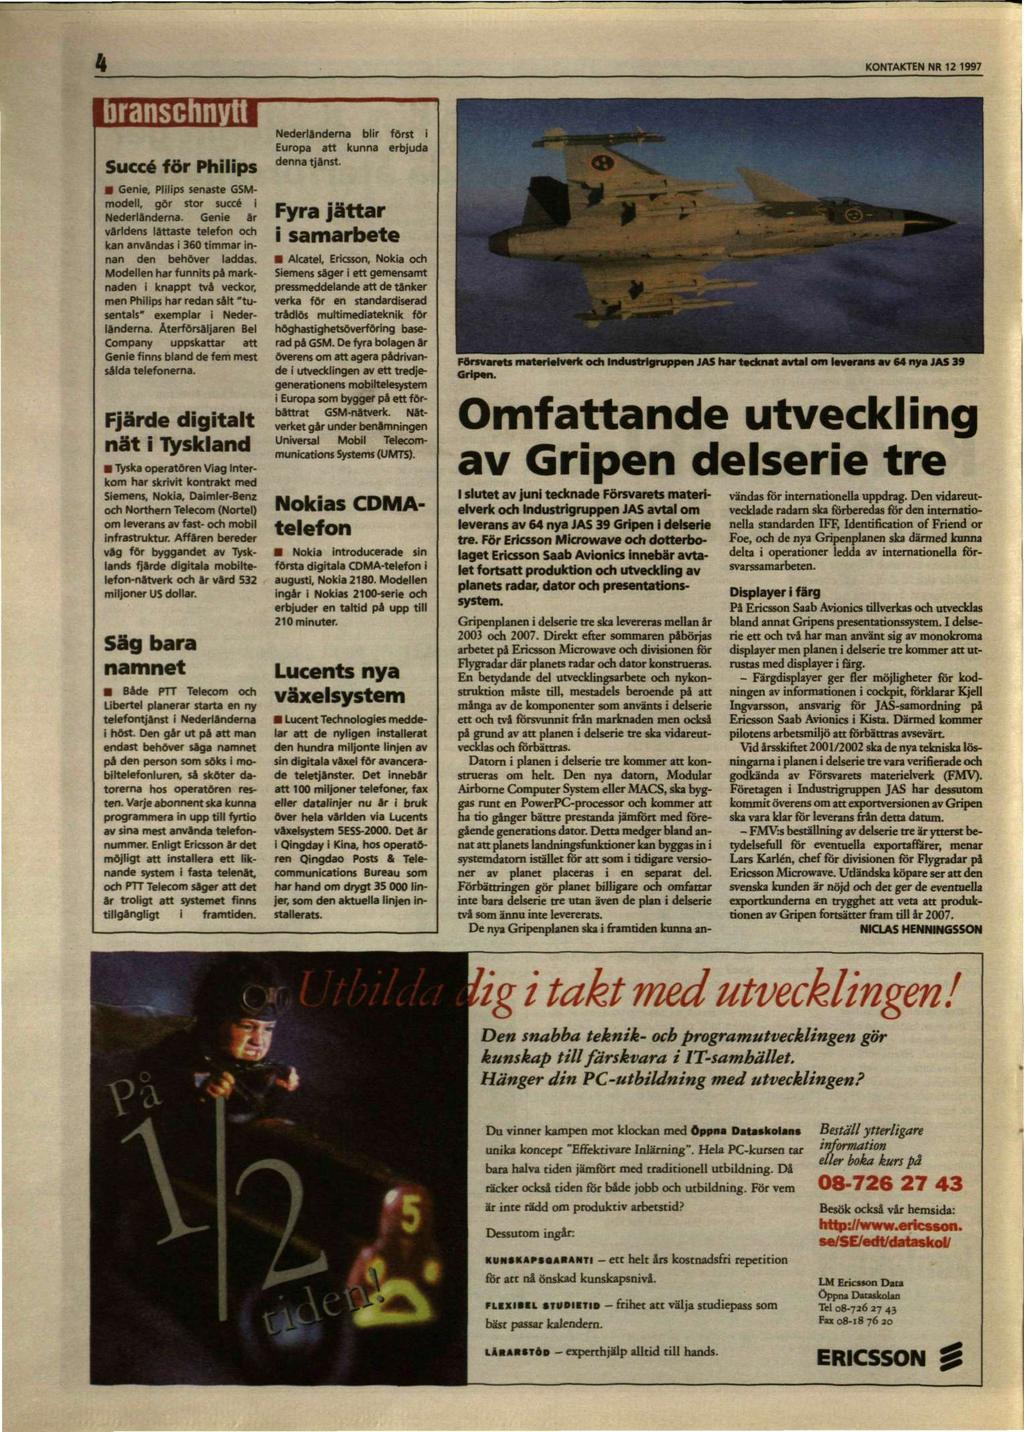 4 KONTAKTEN NR 12 1997 branschnytt Succé för Philips Genie, Plilips senaste GSMmodell, gör stor succé i Nederländerna.